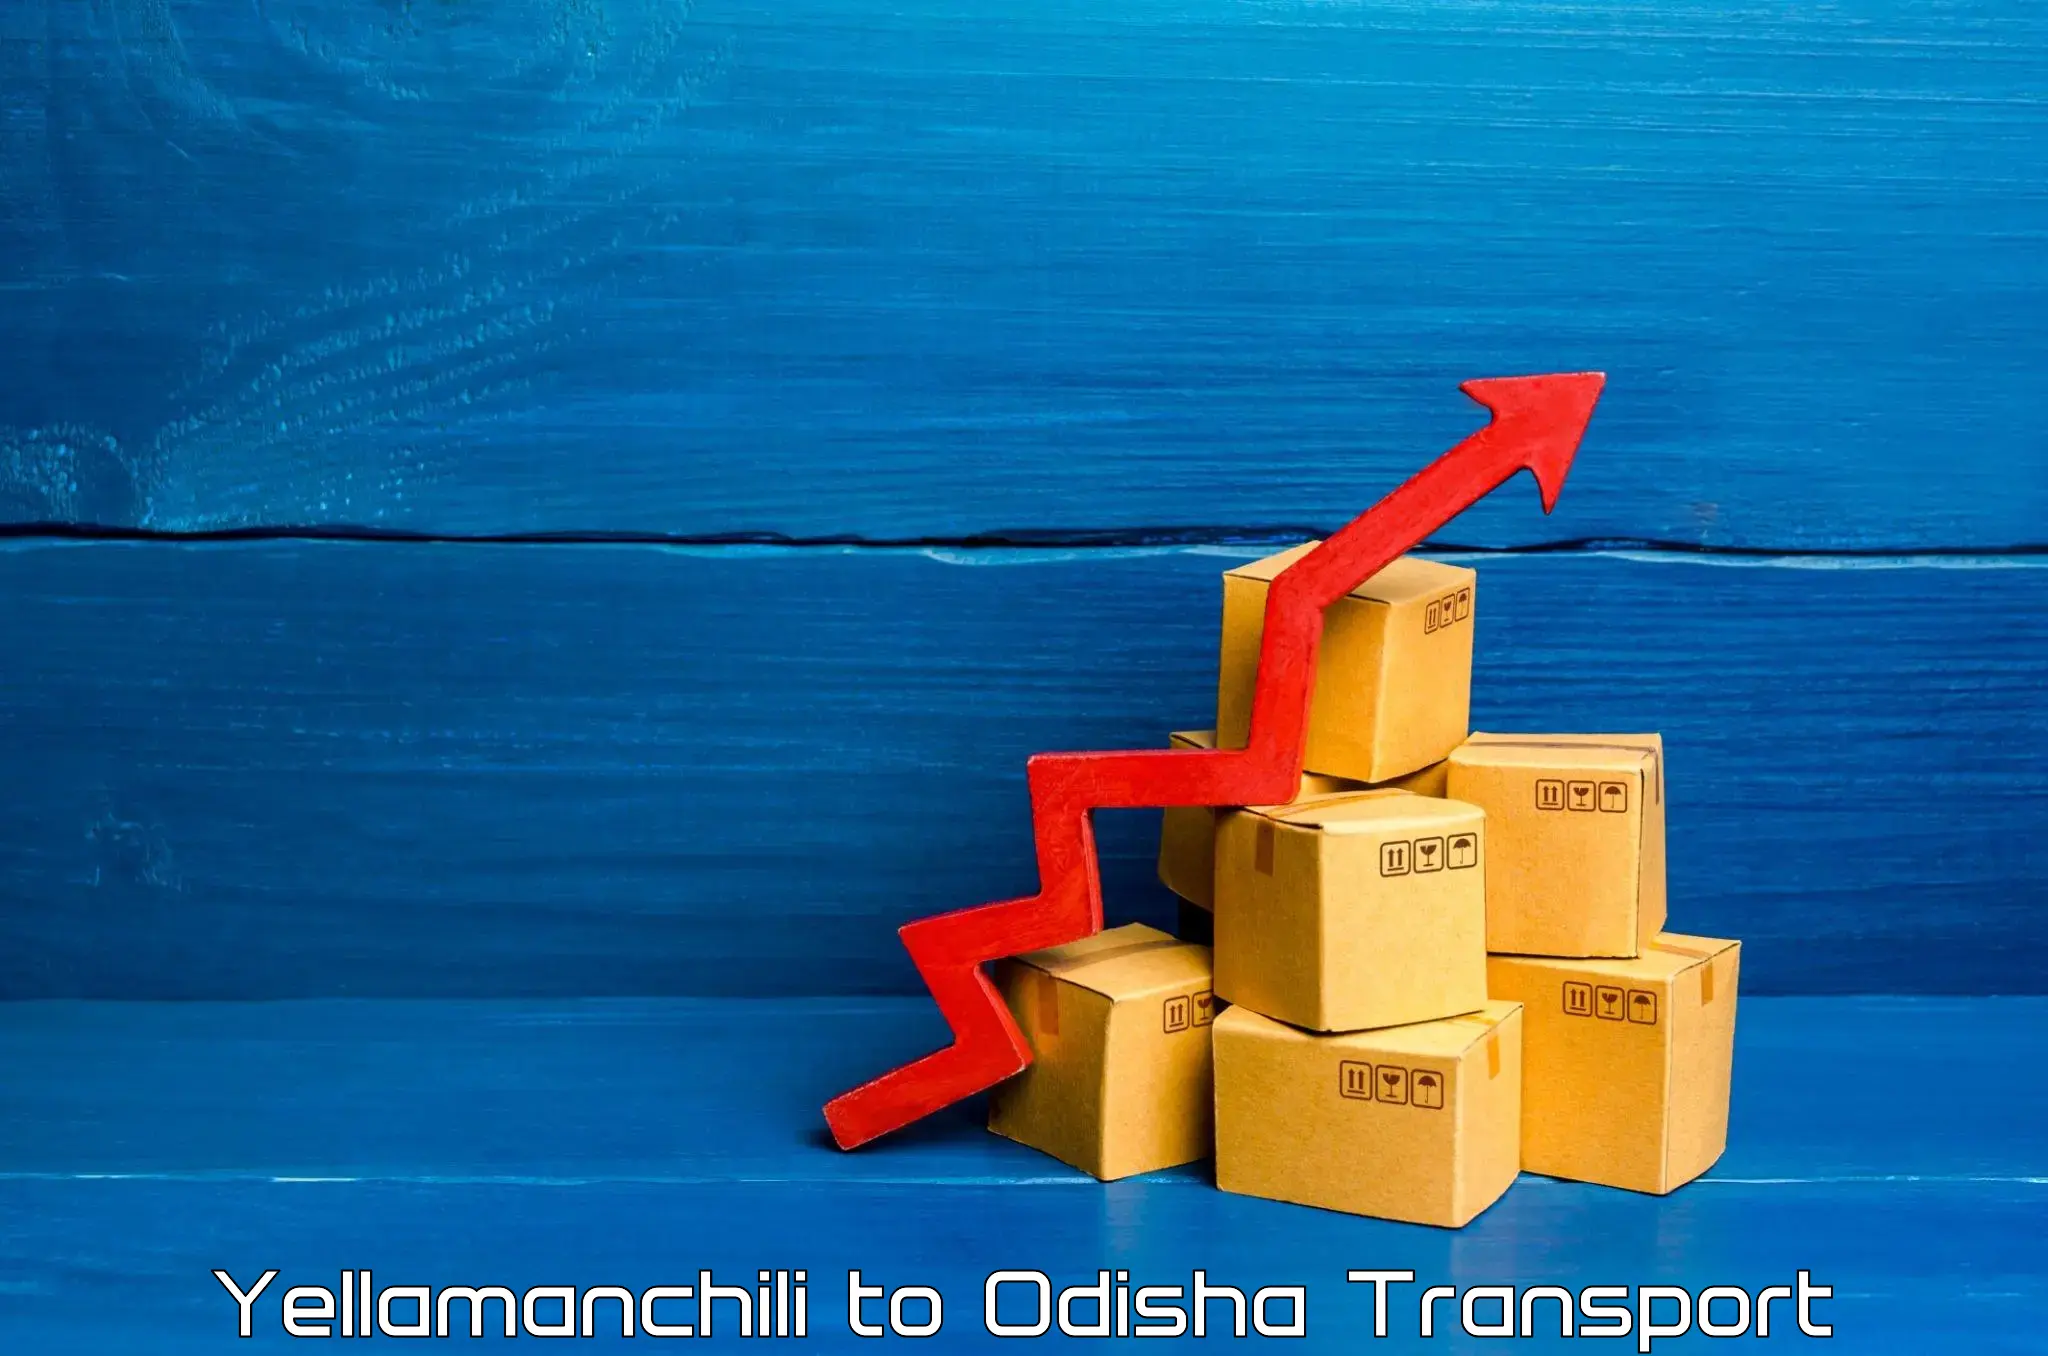 Daily transport service Yellamanchili to Odisha